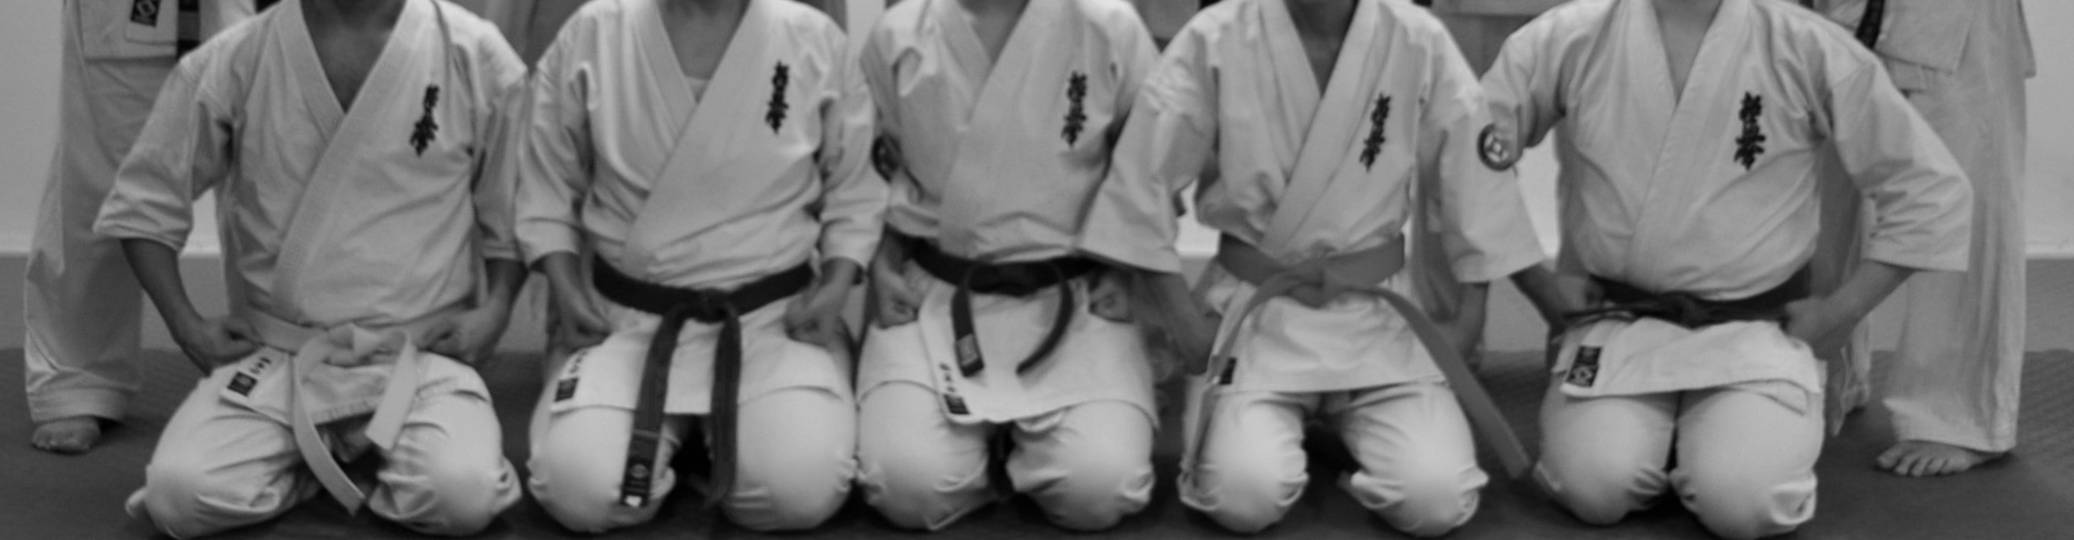 personer i karatedräkter med olika bältesgrad sitter på rad